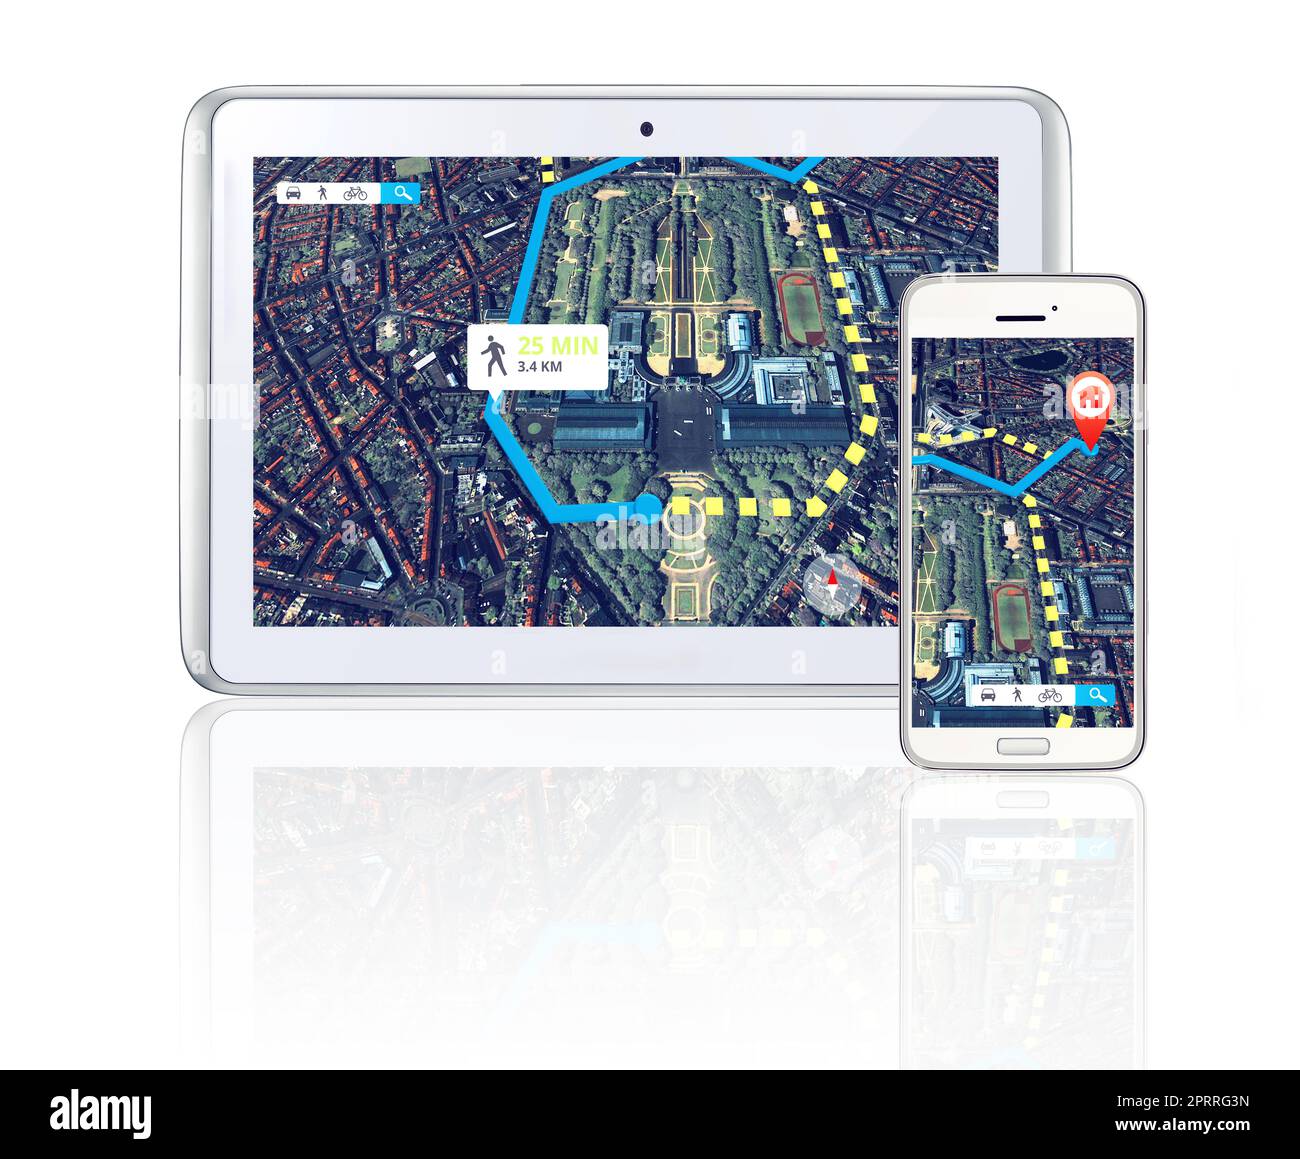 Wählen Sie die beste Route mit aktuellen gps-Daten. Ein Tablet und ein Smartphone mit GPS-Daten. Stockfoto